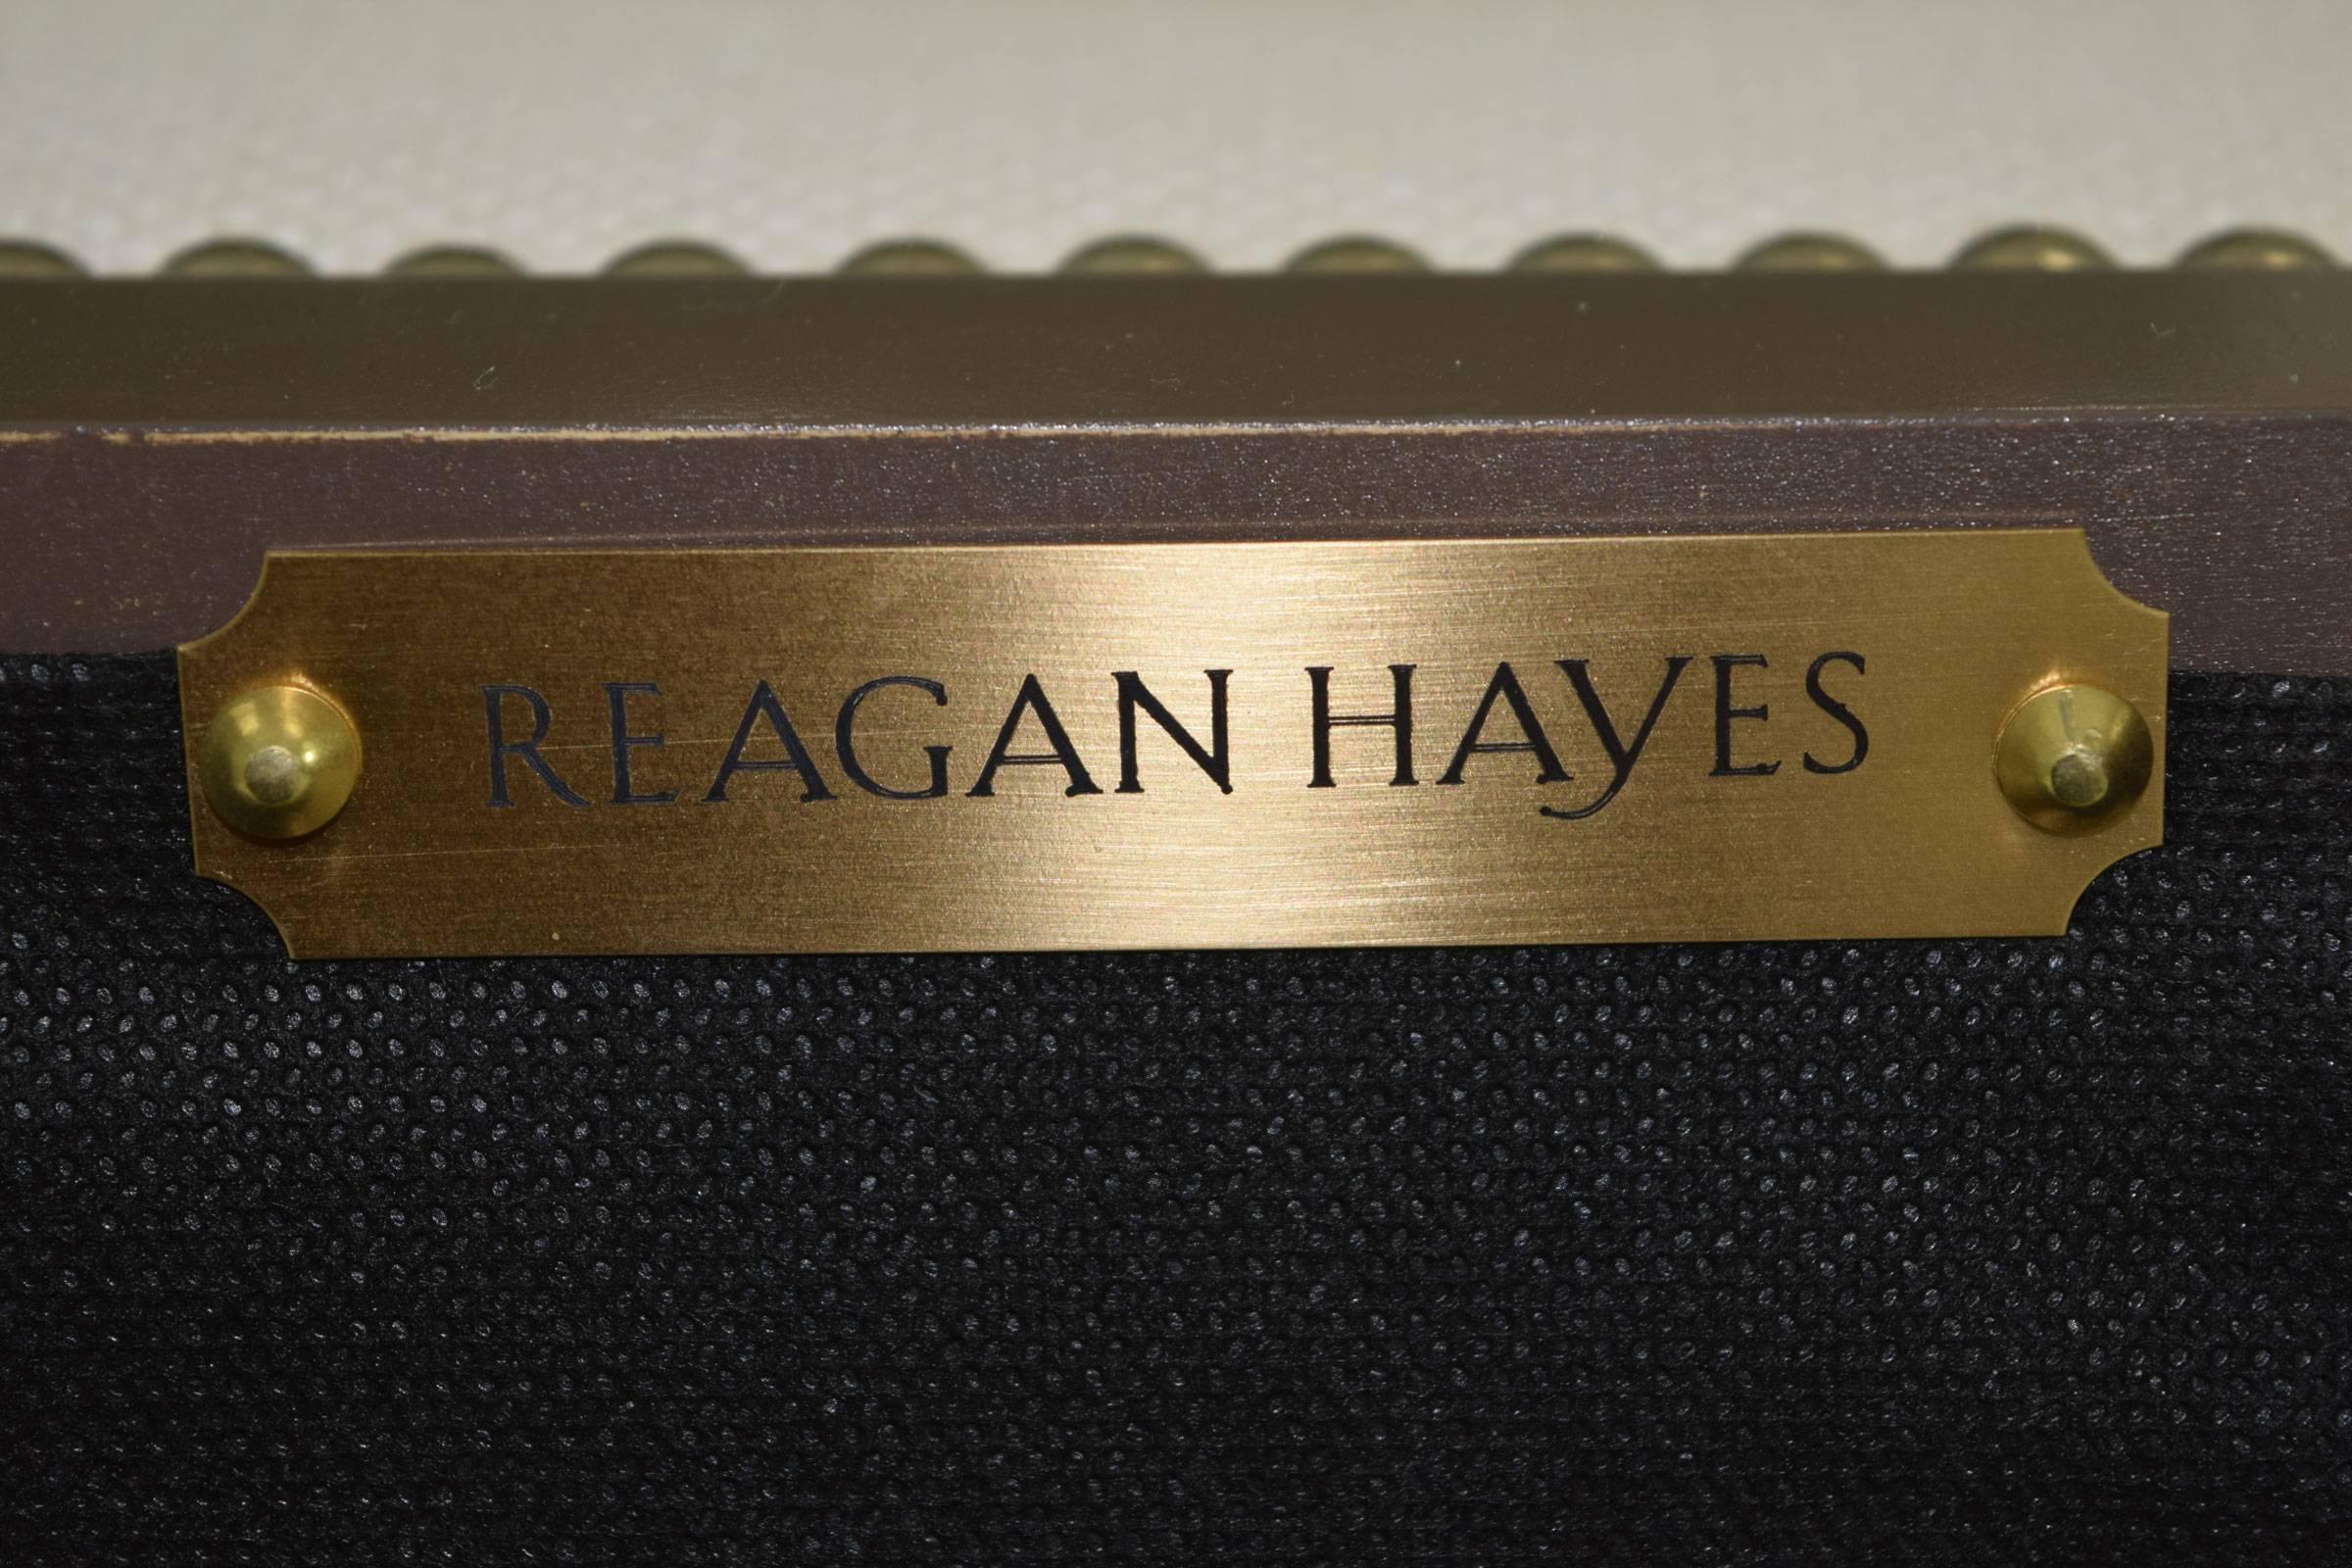 Reagan Hayes 